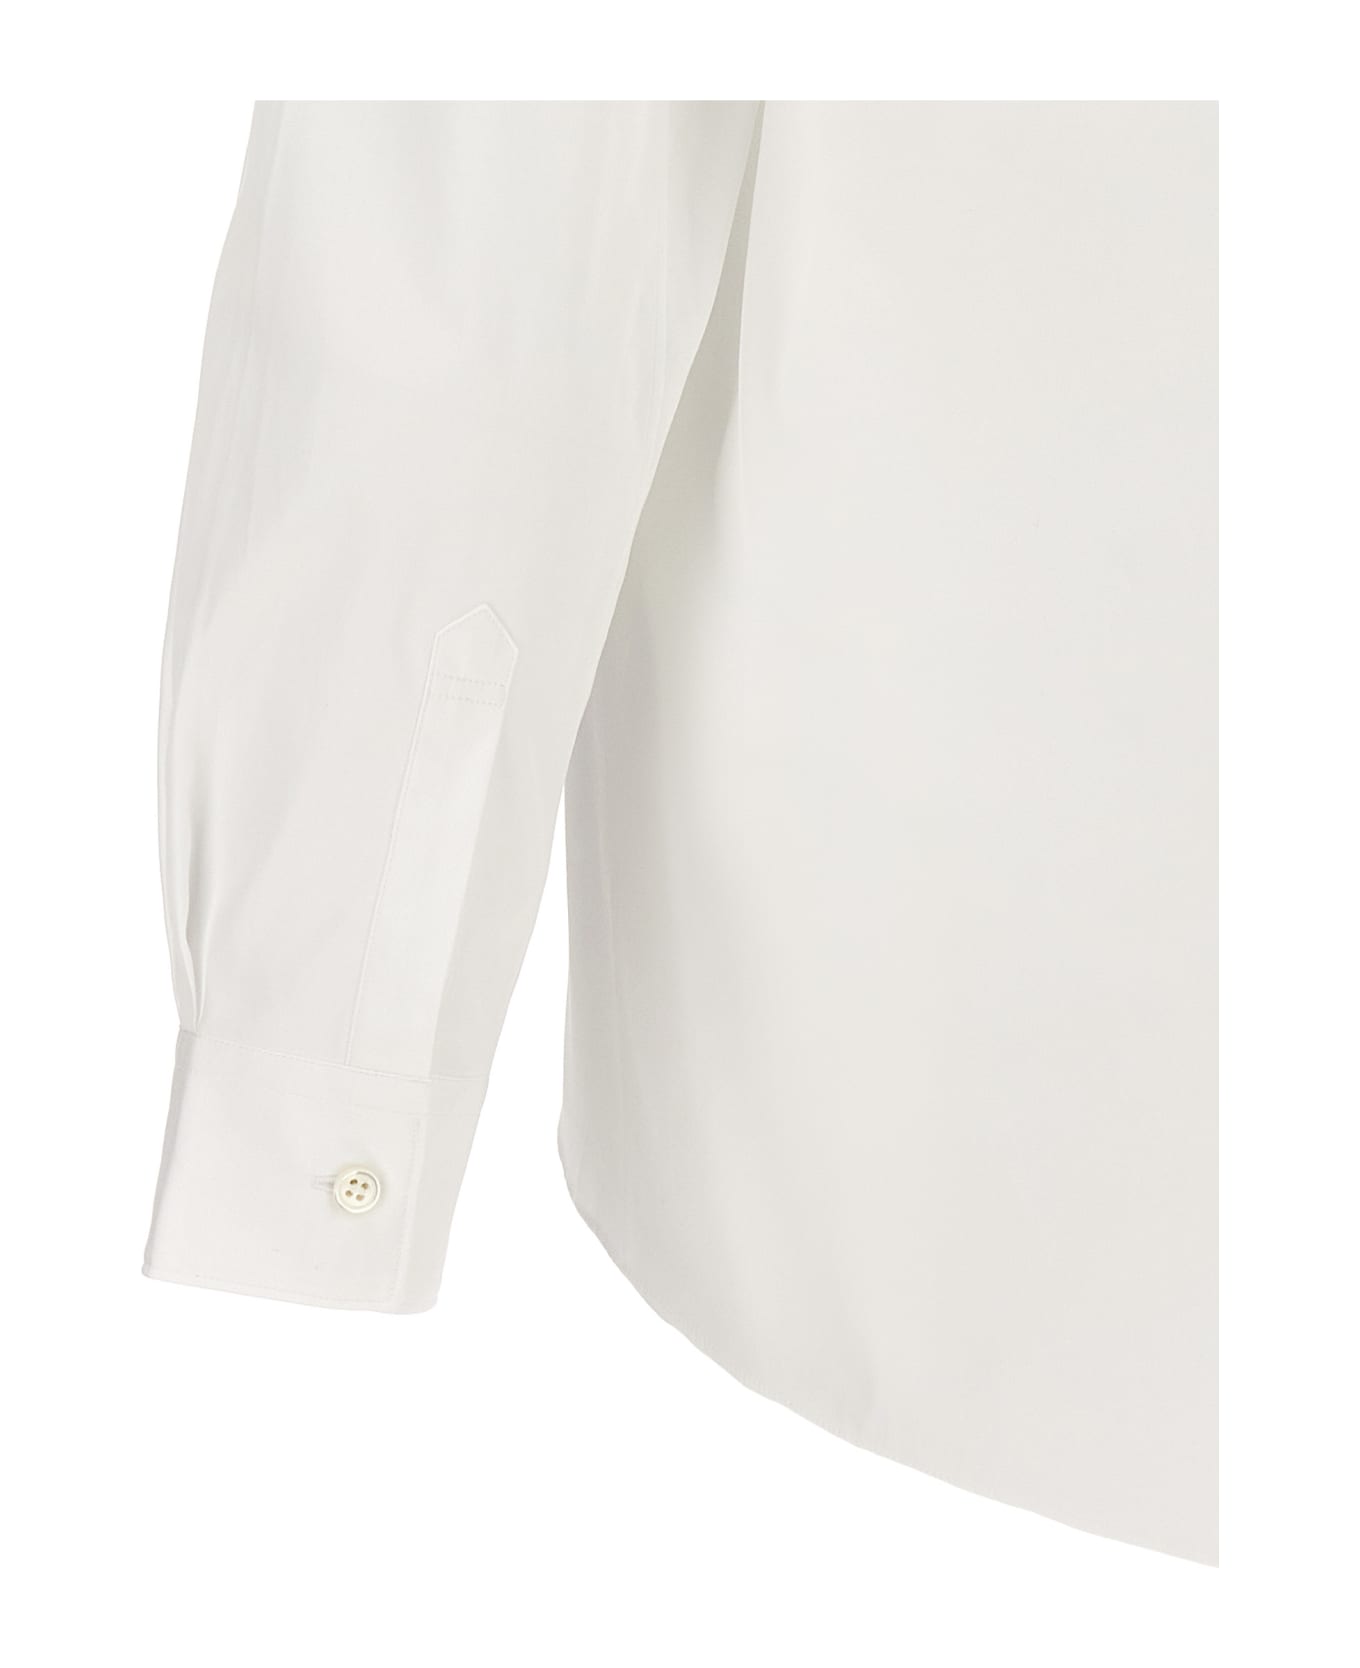 Comme des Garçons X Lacoste Shirt - WHITE シャツ